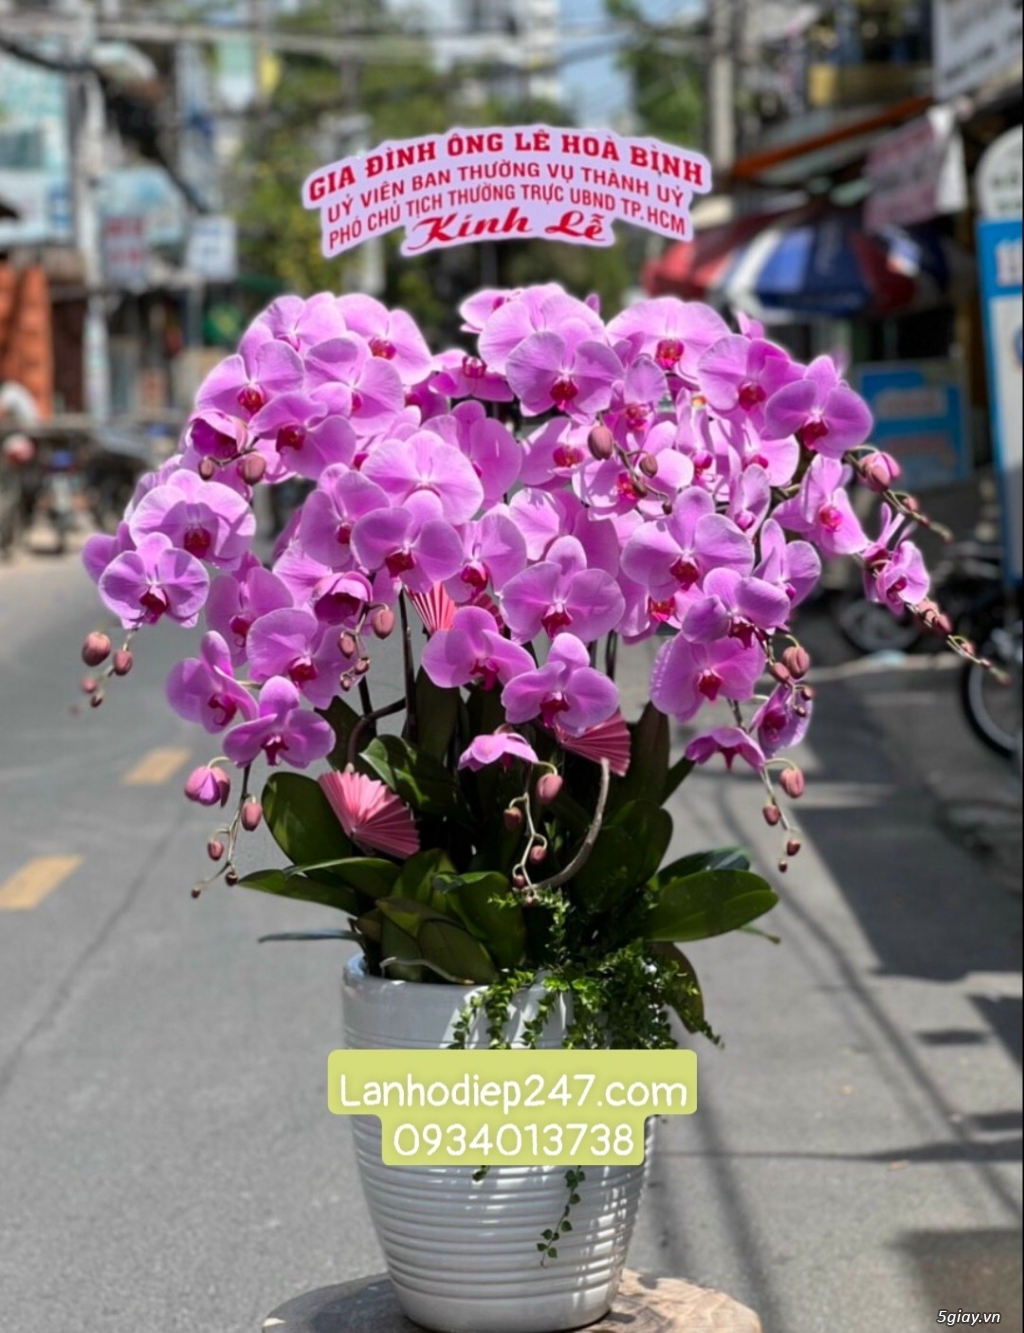 Shop hoa tươi Lan Hồ điệp 247 tại Đắc Lắk 0934013738 - 13